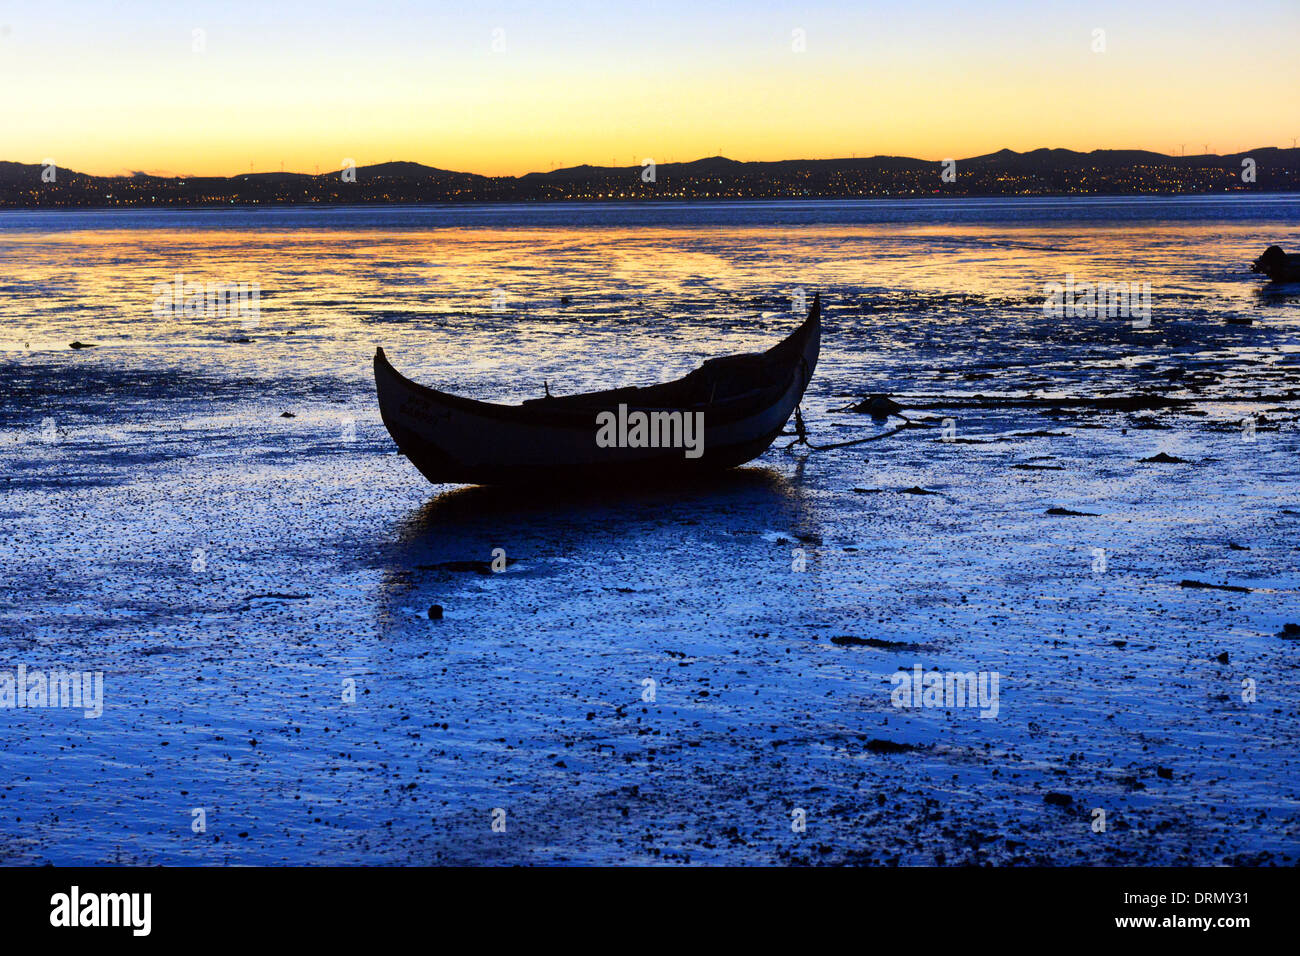 Un bateau de pêche de coquillages sur la rivière Tejo, Alcochete, Portugal au coucher du soleil. Banque D'Images